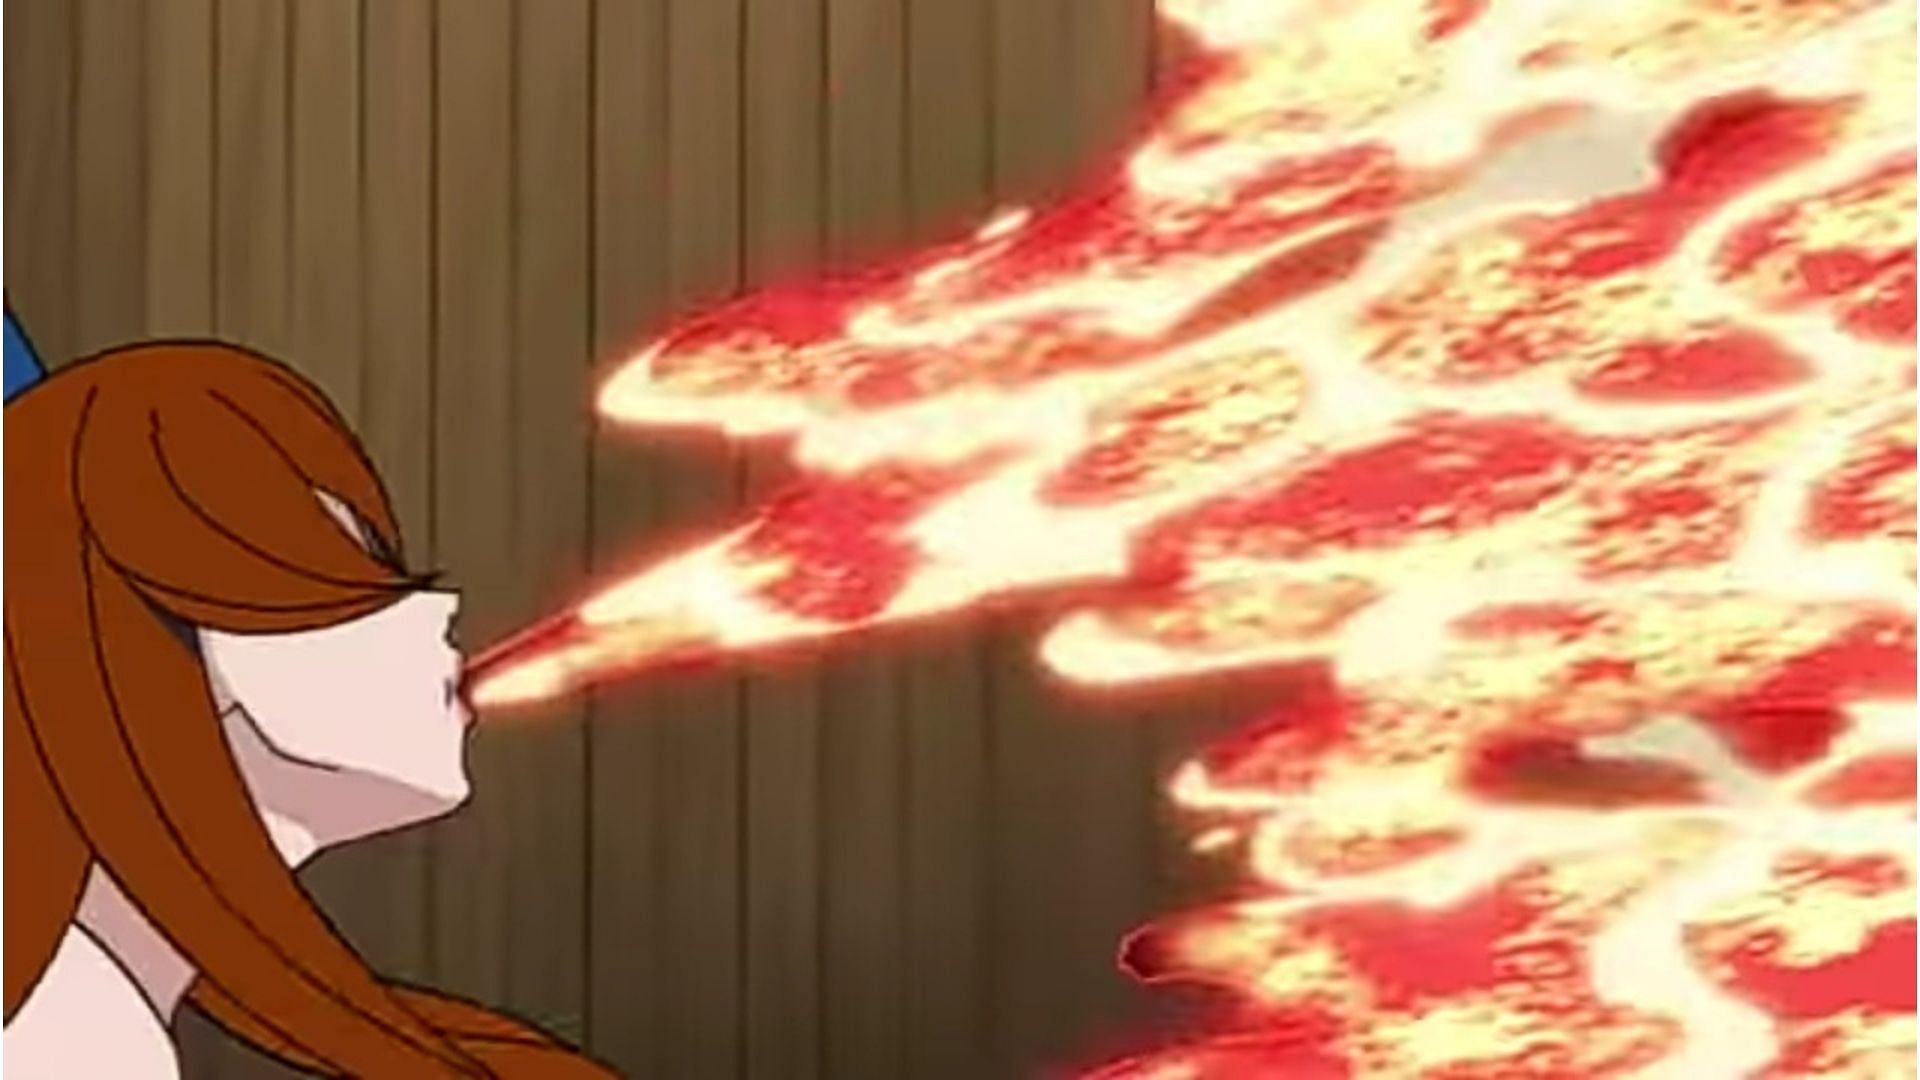 Mei using her Kekkei Genkai Lava Release as seen in the anime (image via Pierrot)